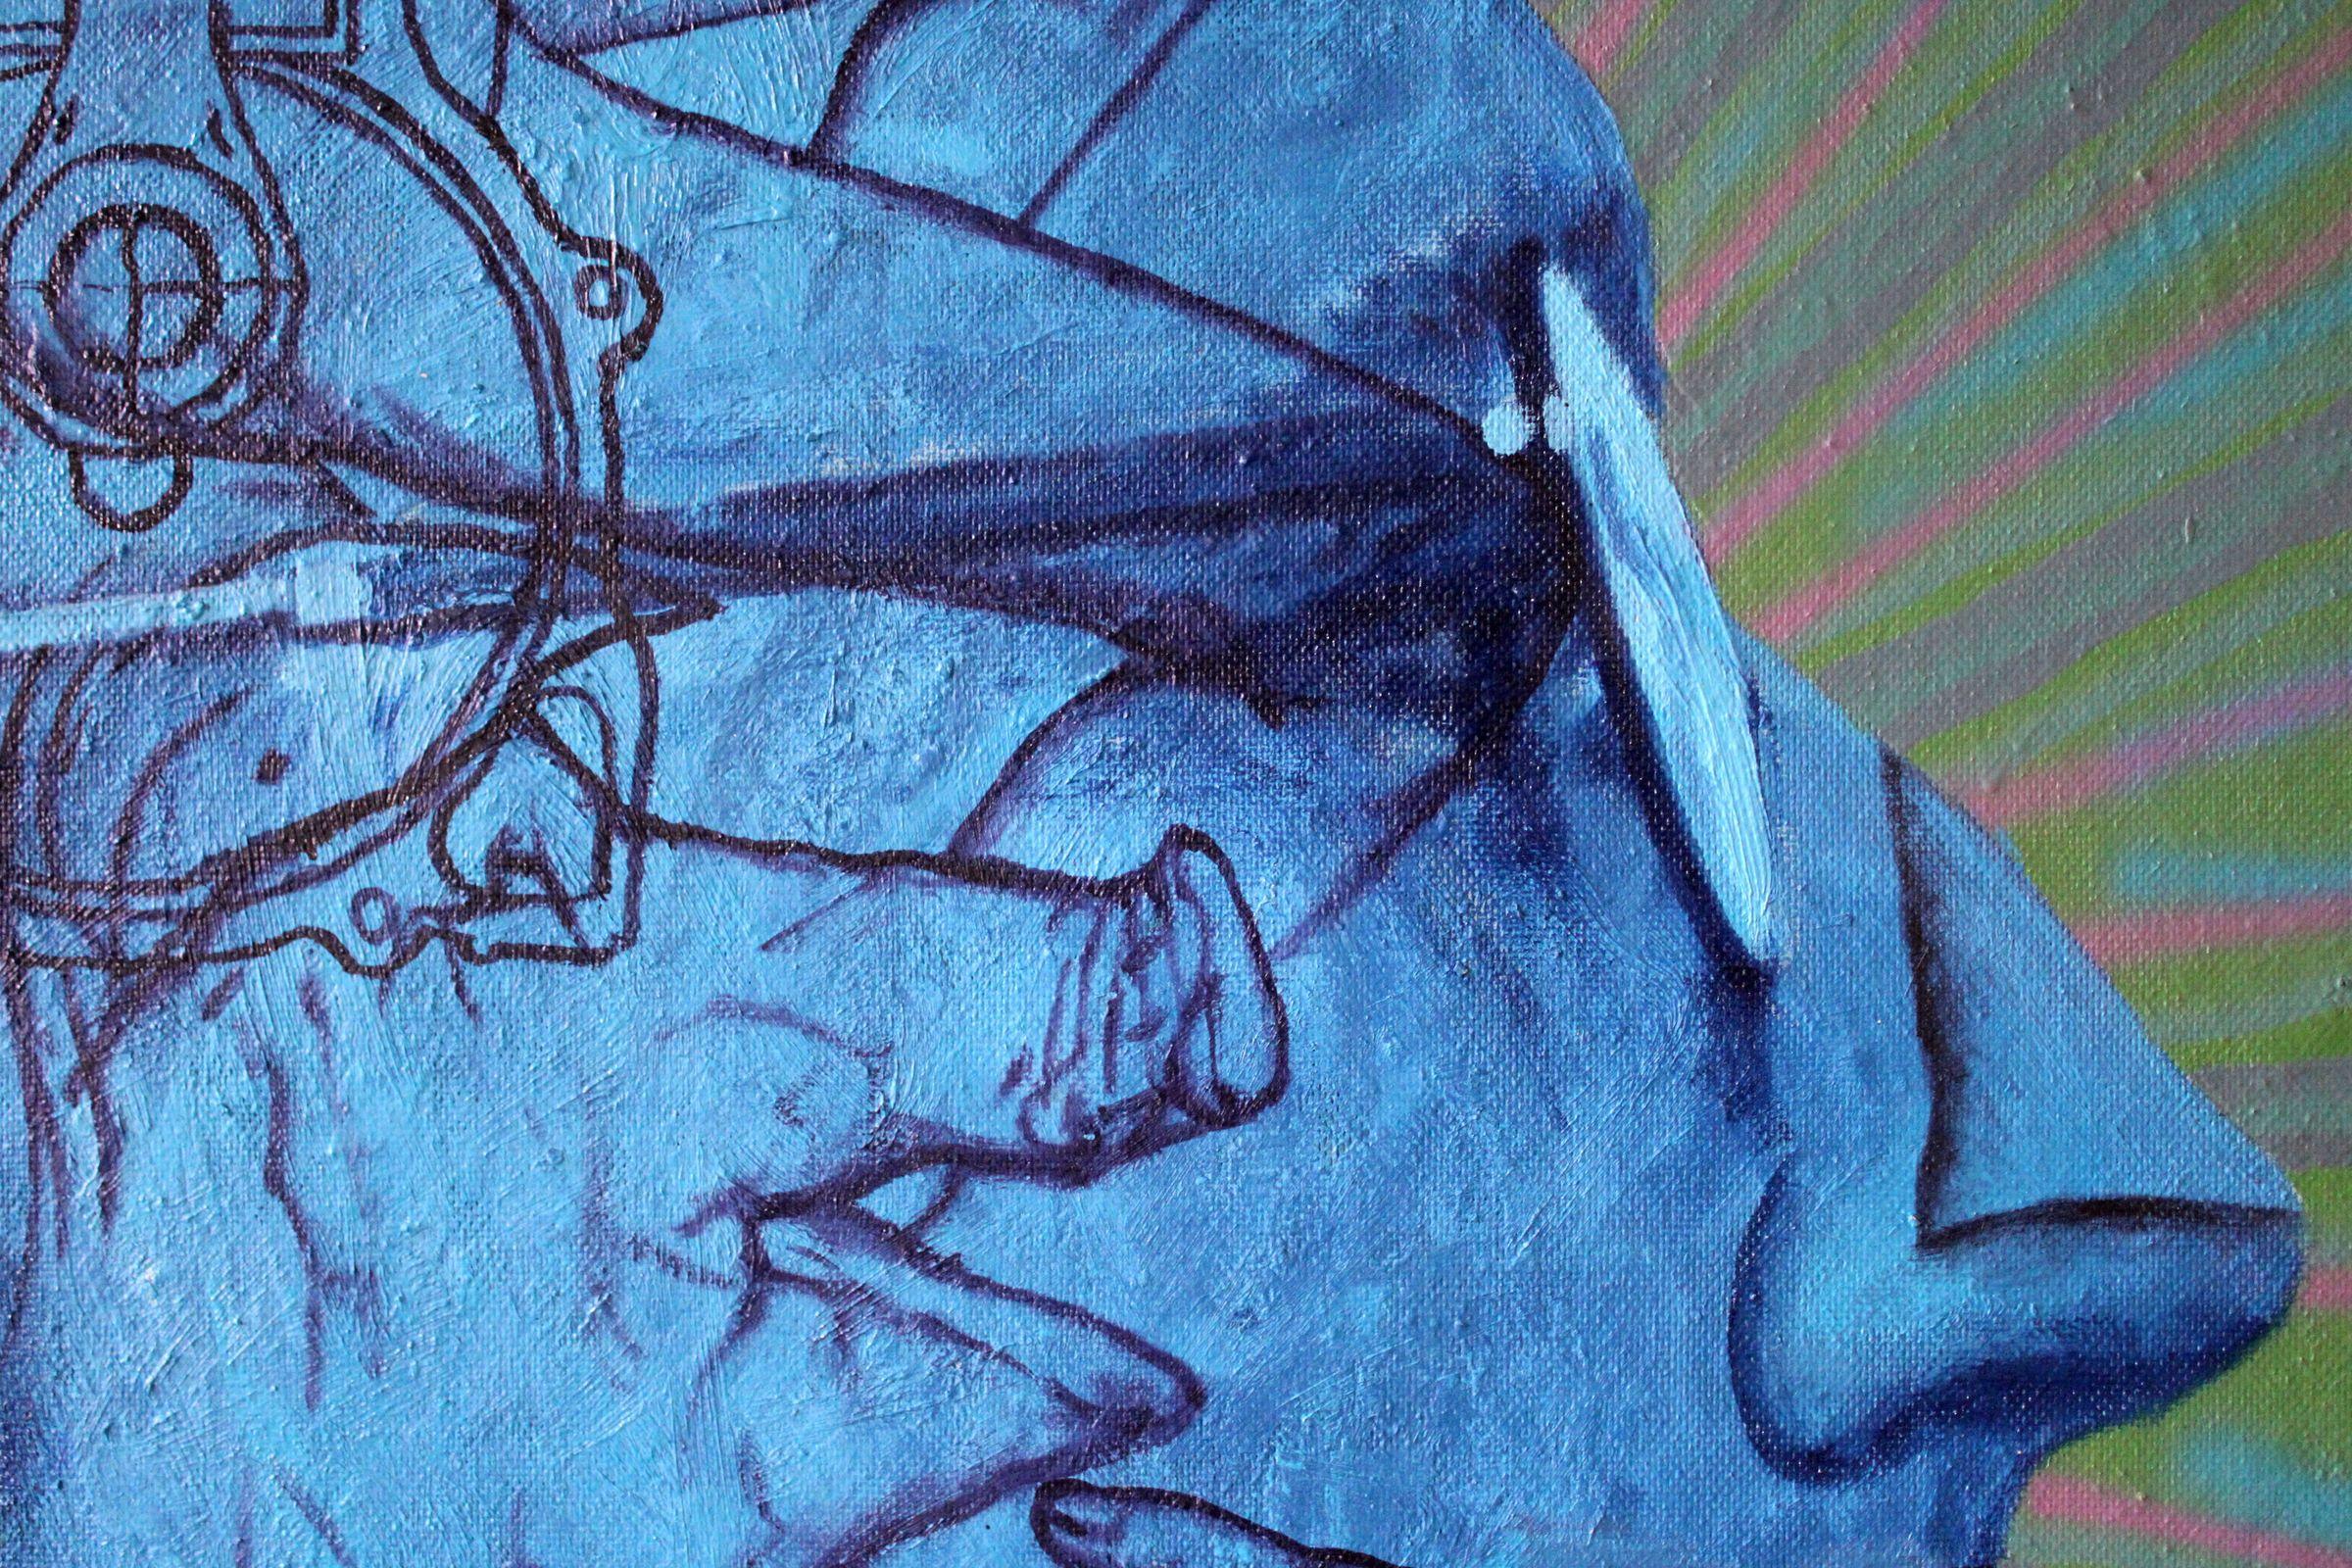 Tätowier mich 4  2002, Karton, Mischtechnik, 153x117 cm (Blau), Portrait Painting, von Juris Utans